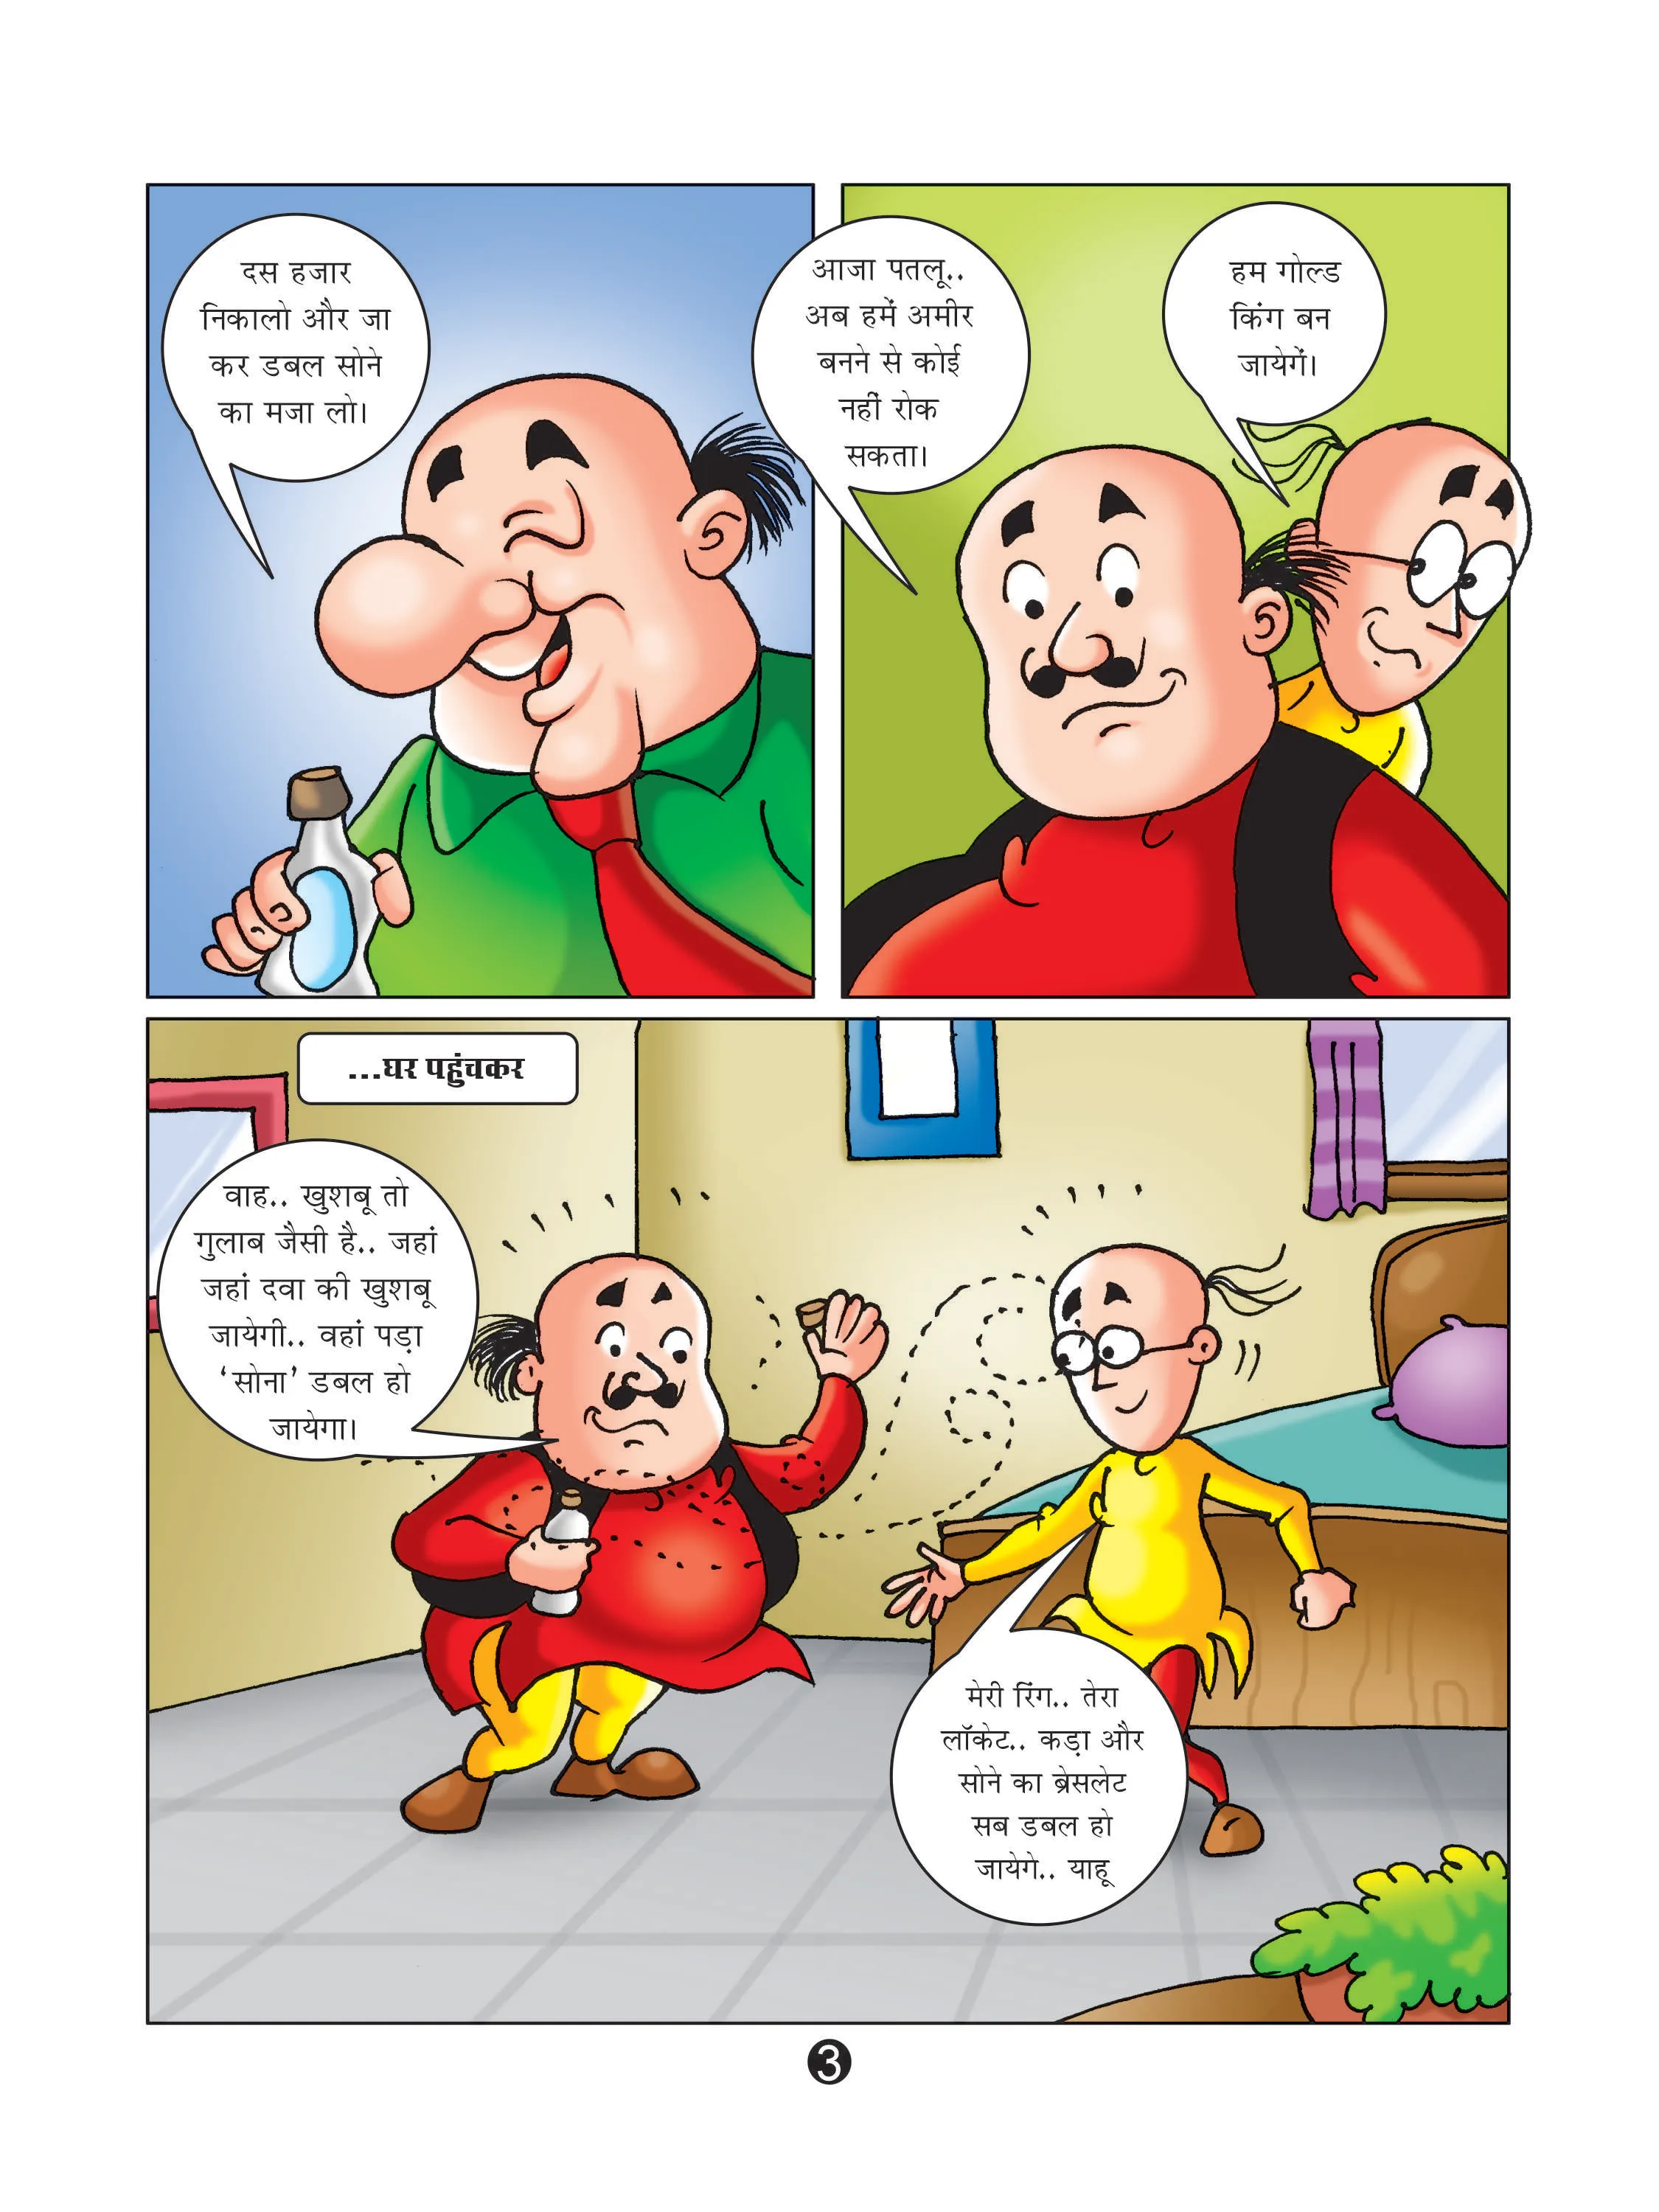 lotpot E-Comics cartoon character Motu Patlu